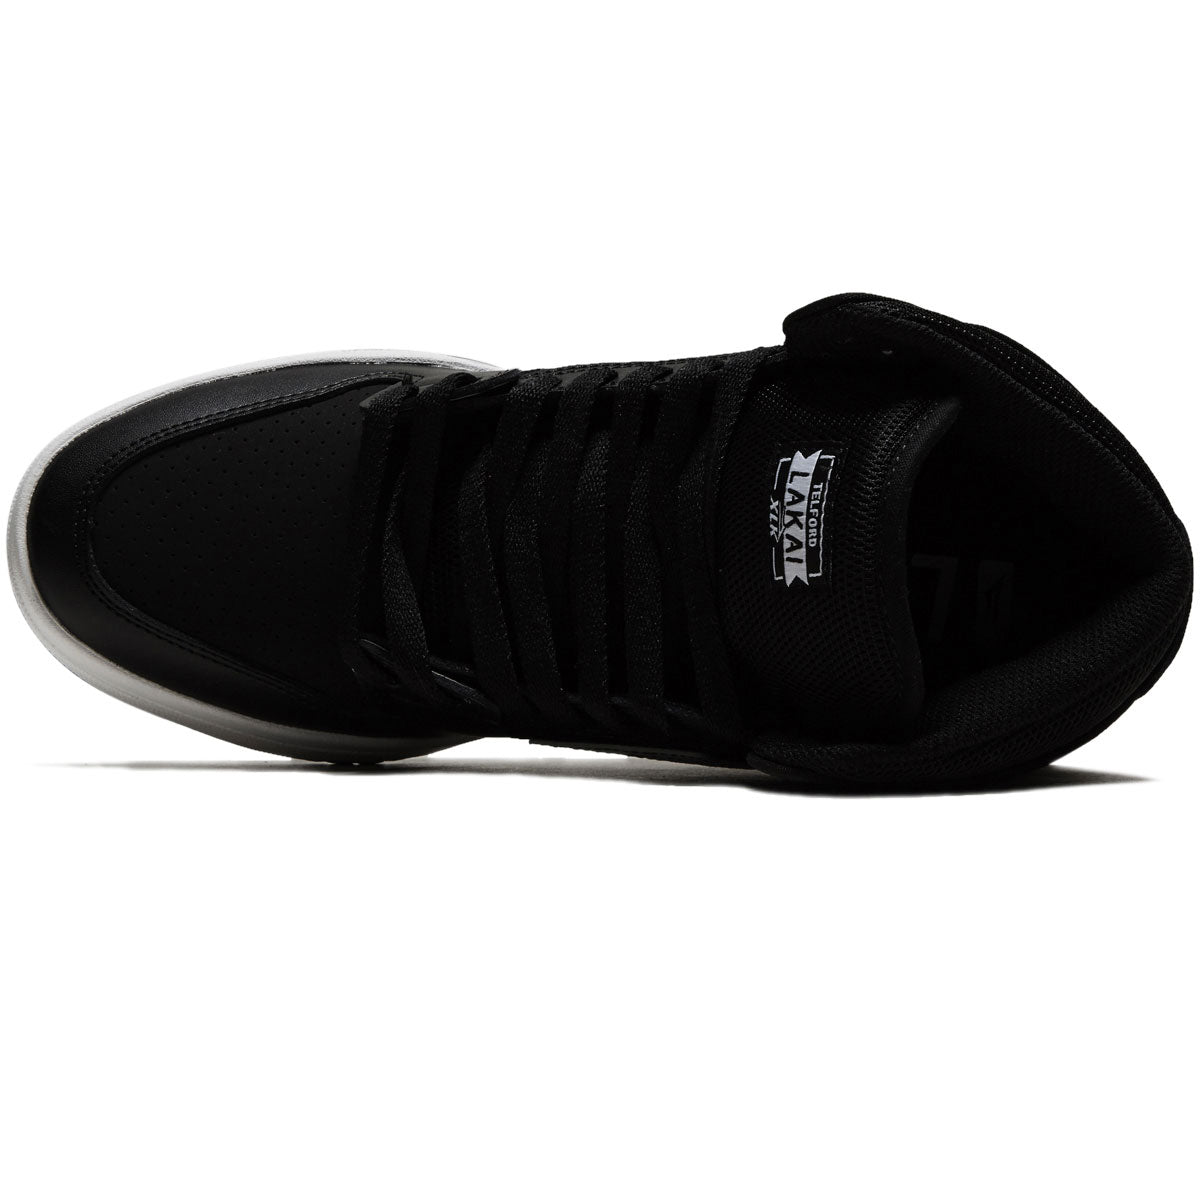 Lakai Telford Shoes - Black Leather image 3